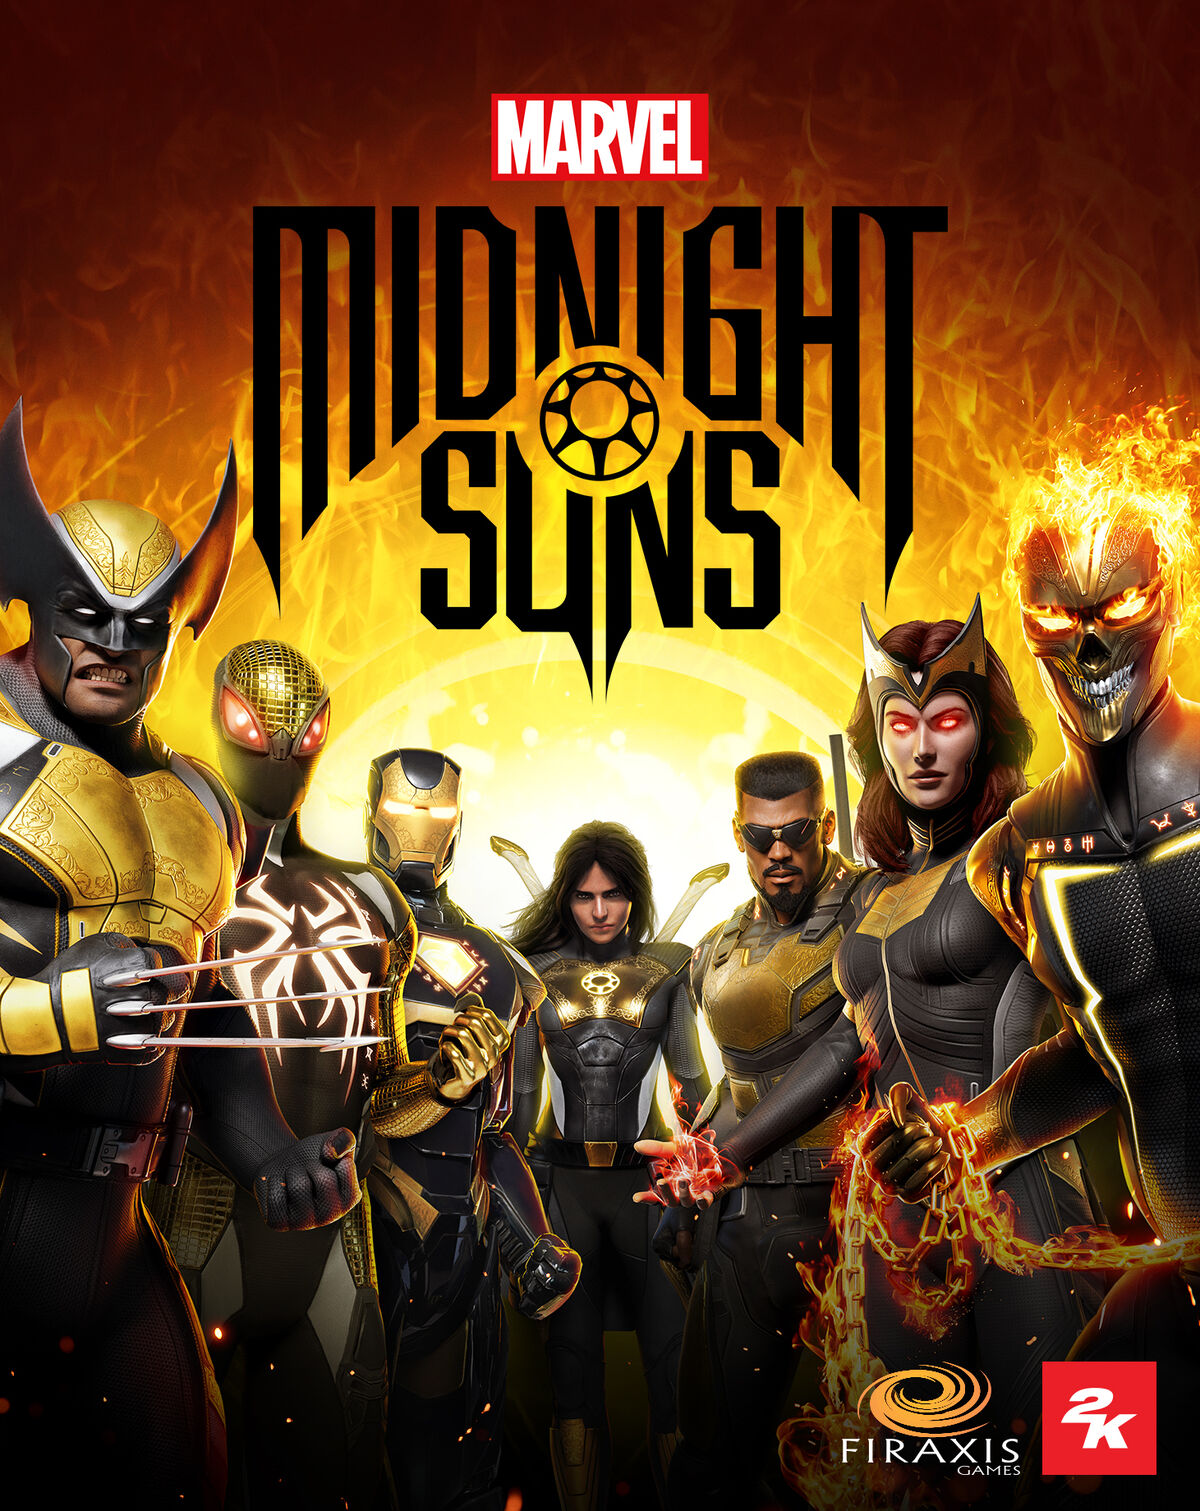 Tales of Suspense #39, Marvel's Midnight Suns Wiki